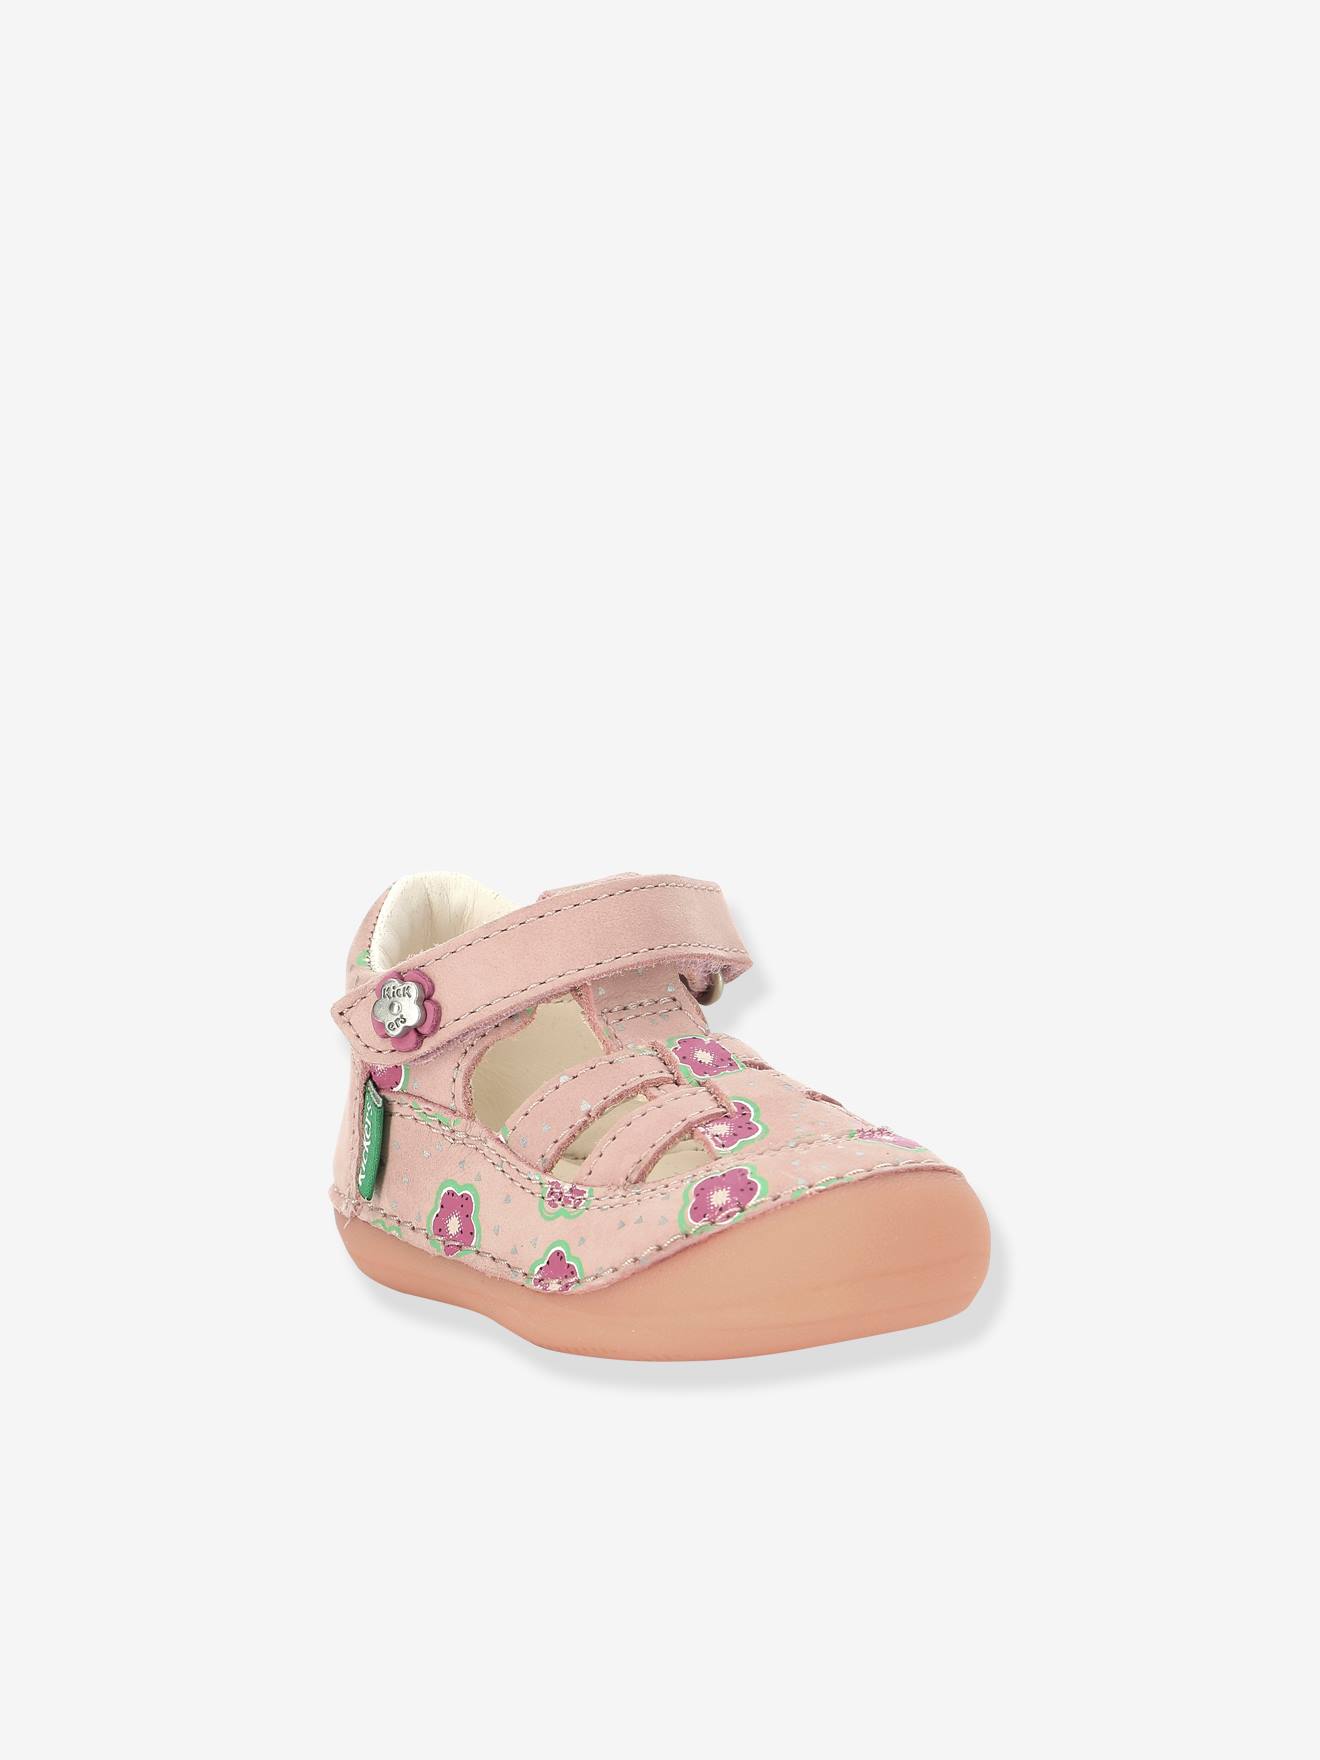 Leren sandalen meisjesbaby Sushy Originel Softers KICKERS® lichtroze bloem